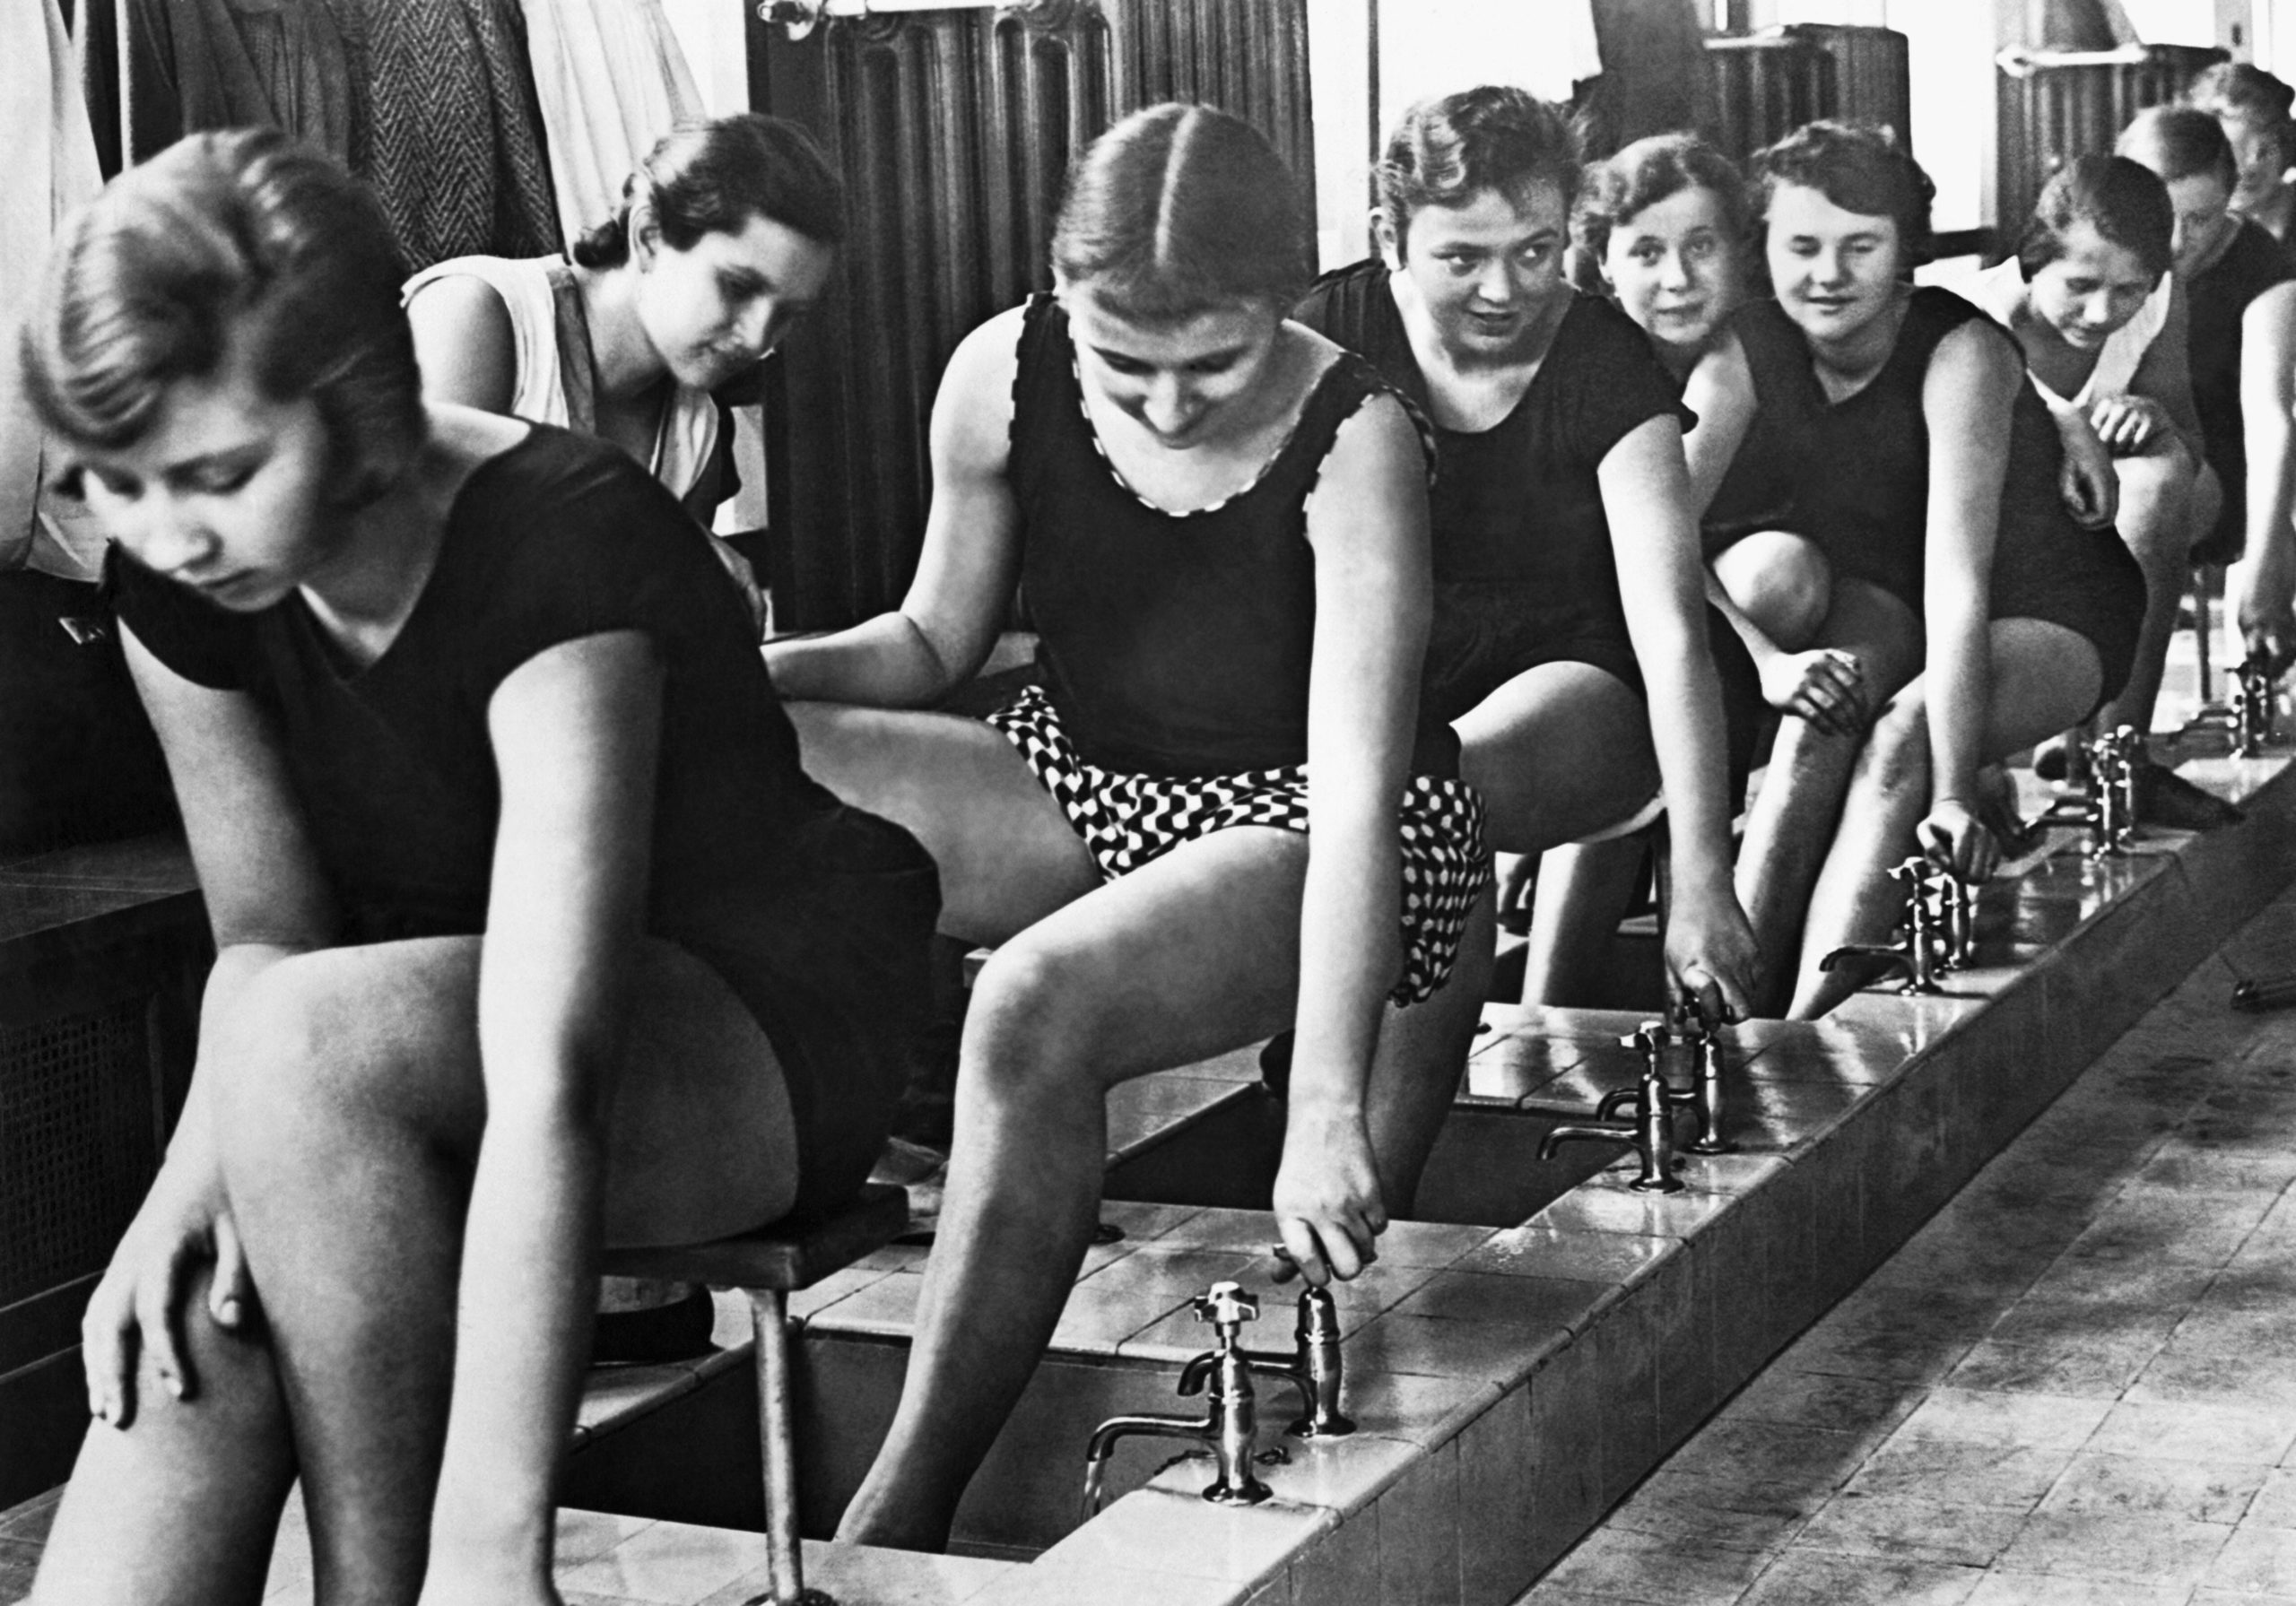 Berlin Frauen 1920er: Füsse waschen nach der Gymnastikstunde, 1929. Foto: Imago/Underwood Archives/UIG